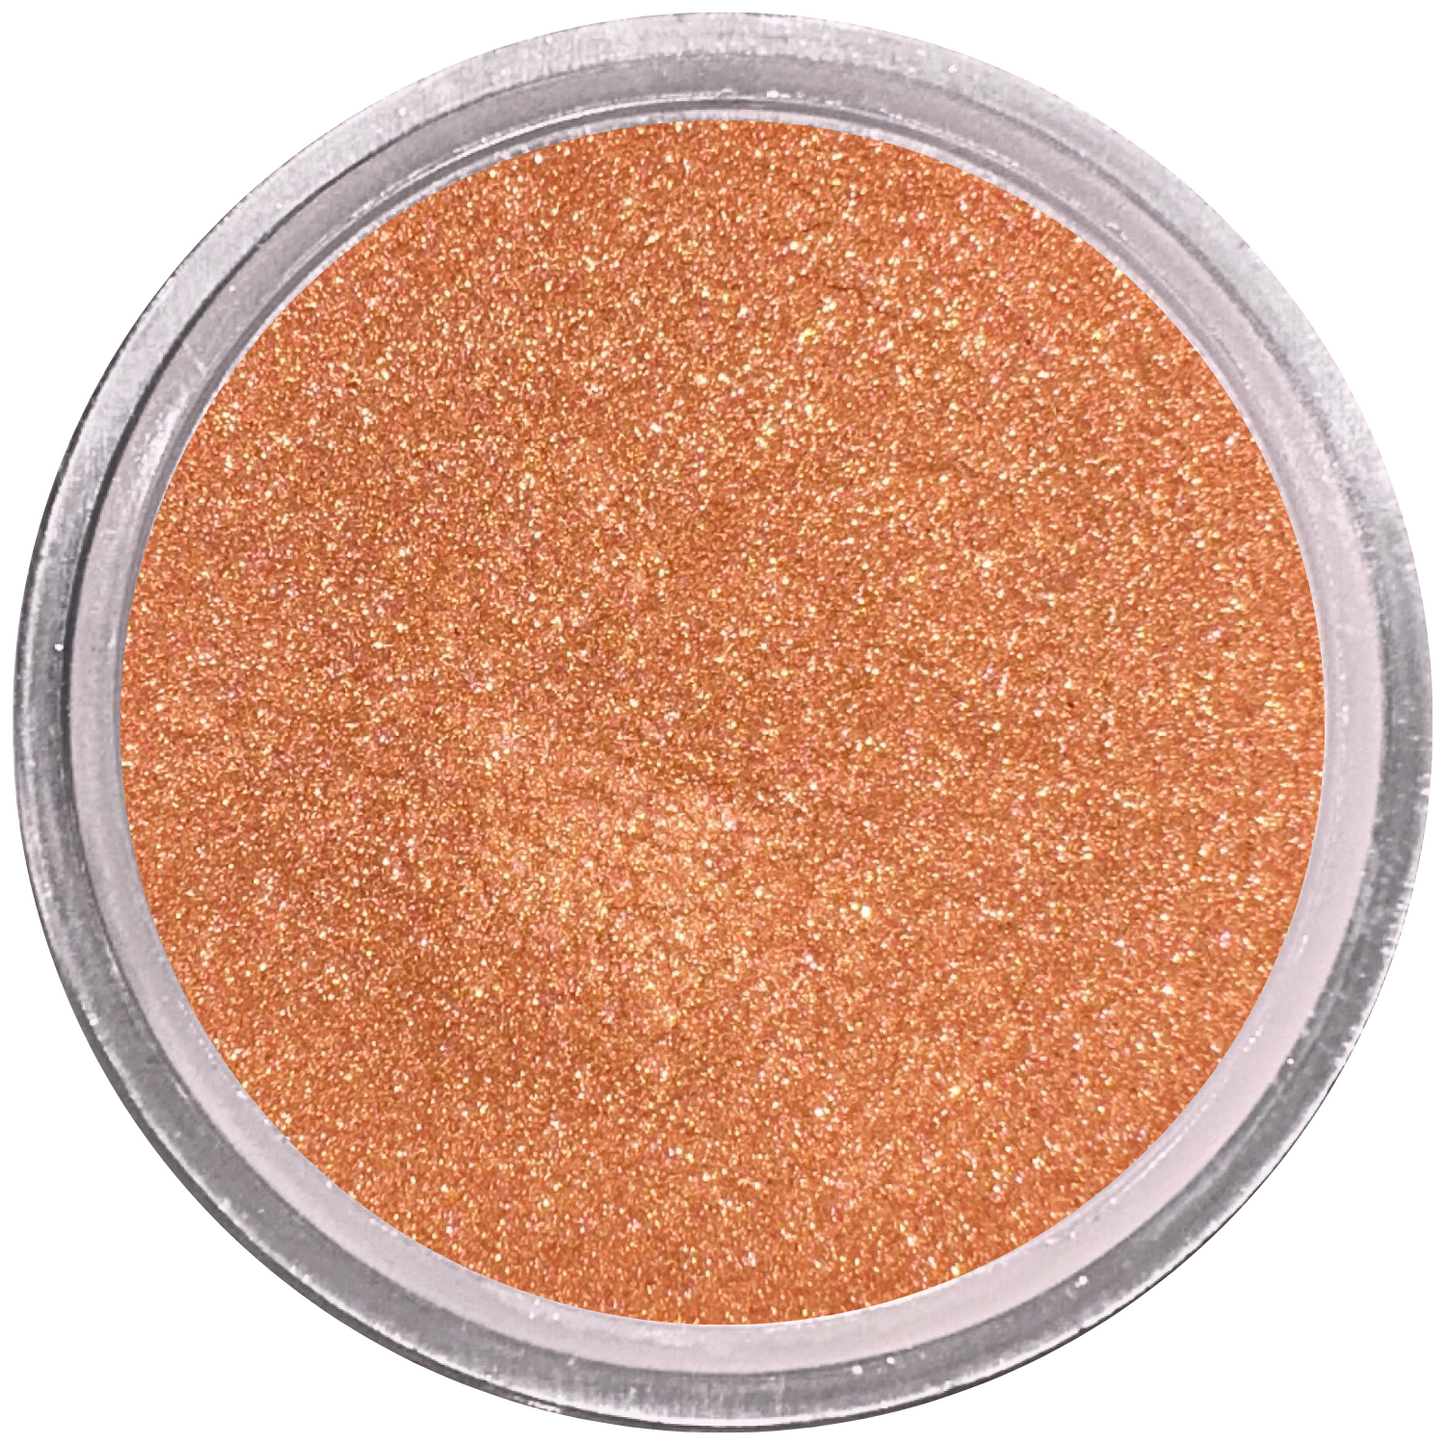 Coppertone Loose Powder Mineral Eyeshadow Single 3g